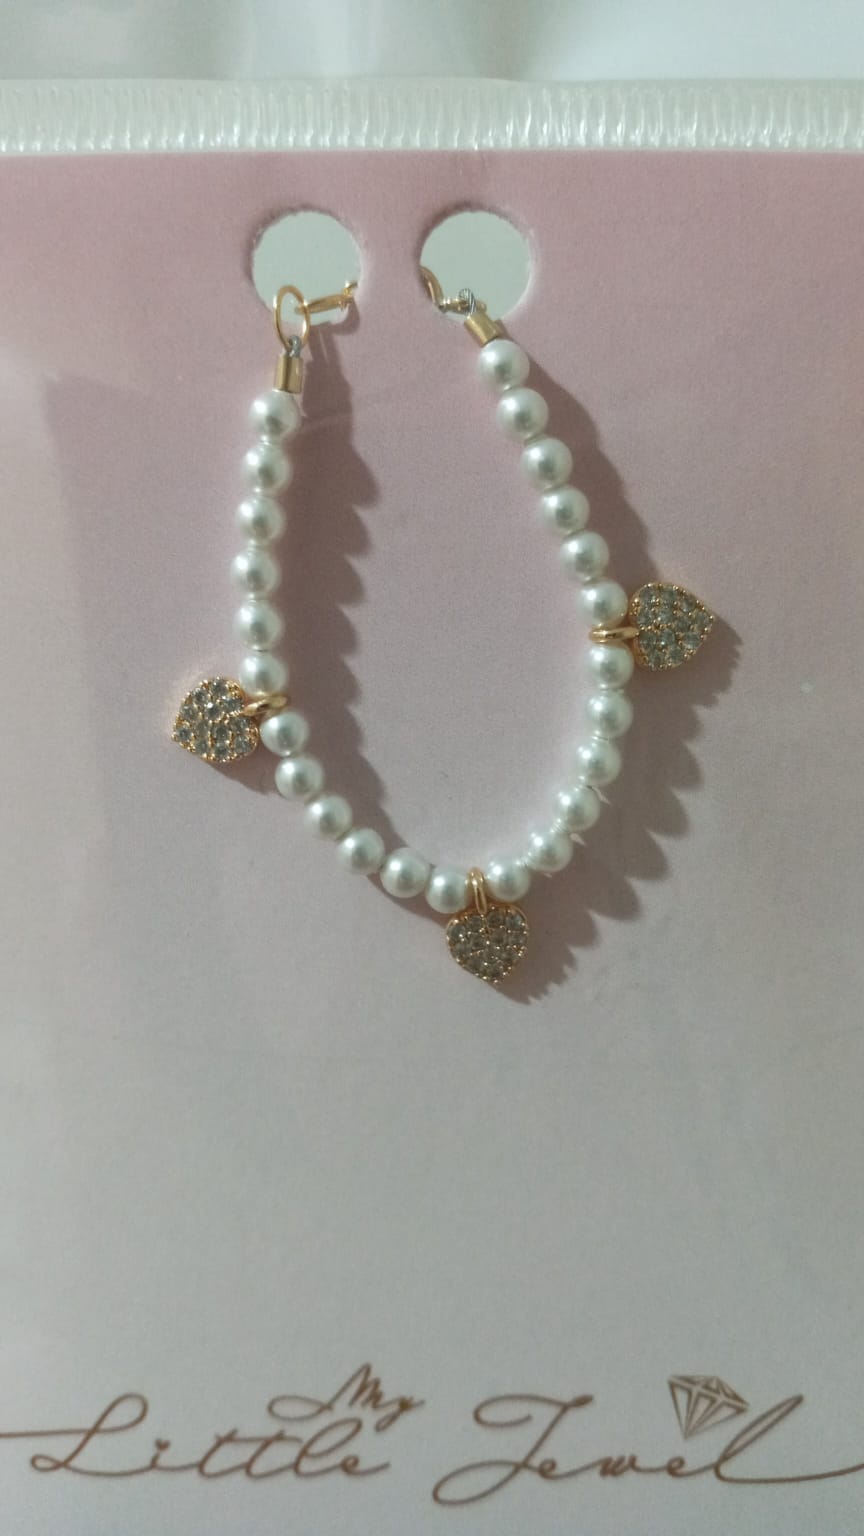 My Little Jewel Bracelet - White Pearls